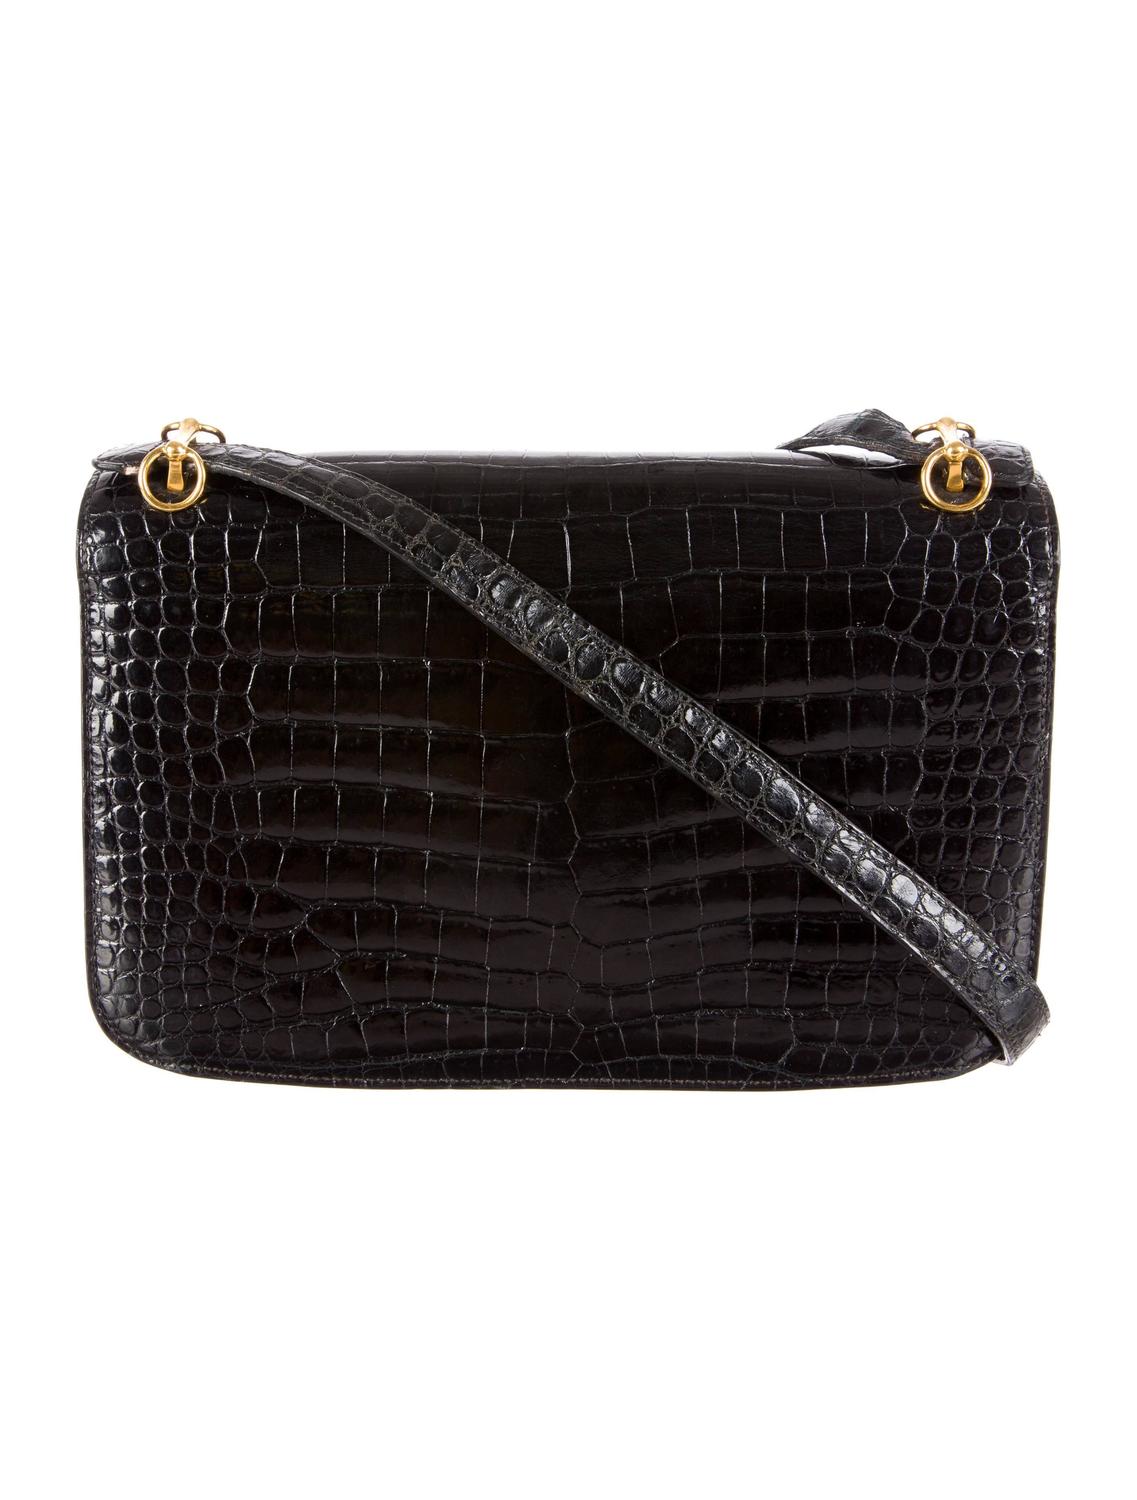 Hermes RARE Vintage Black Crocodile Gold Hardware Box Flap Shoulder Bag ...